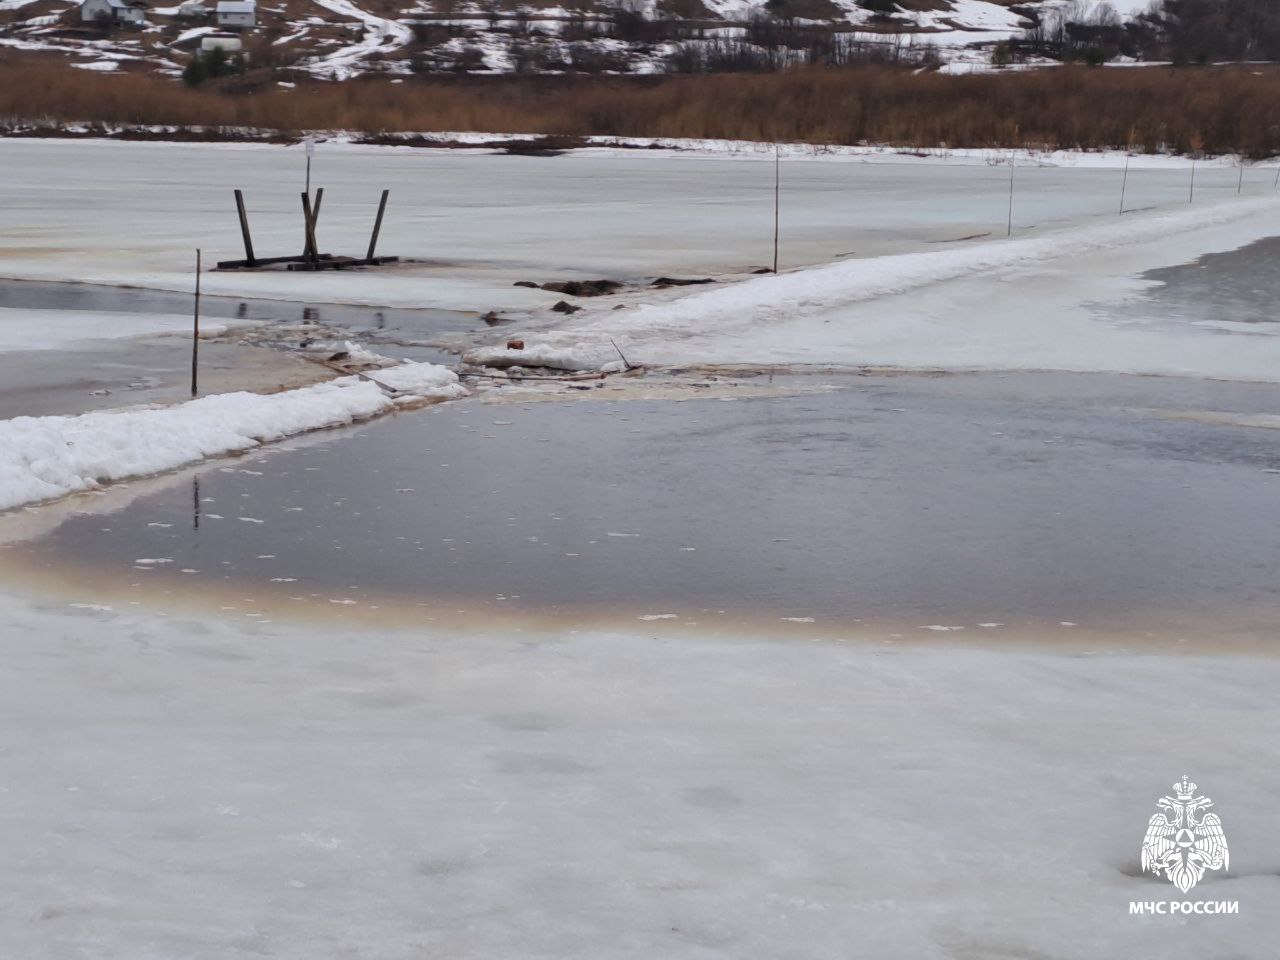 
В Емве дачник провалился под лед